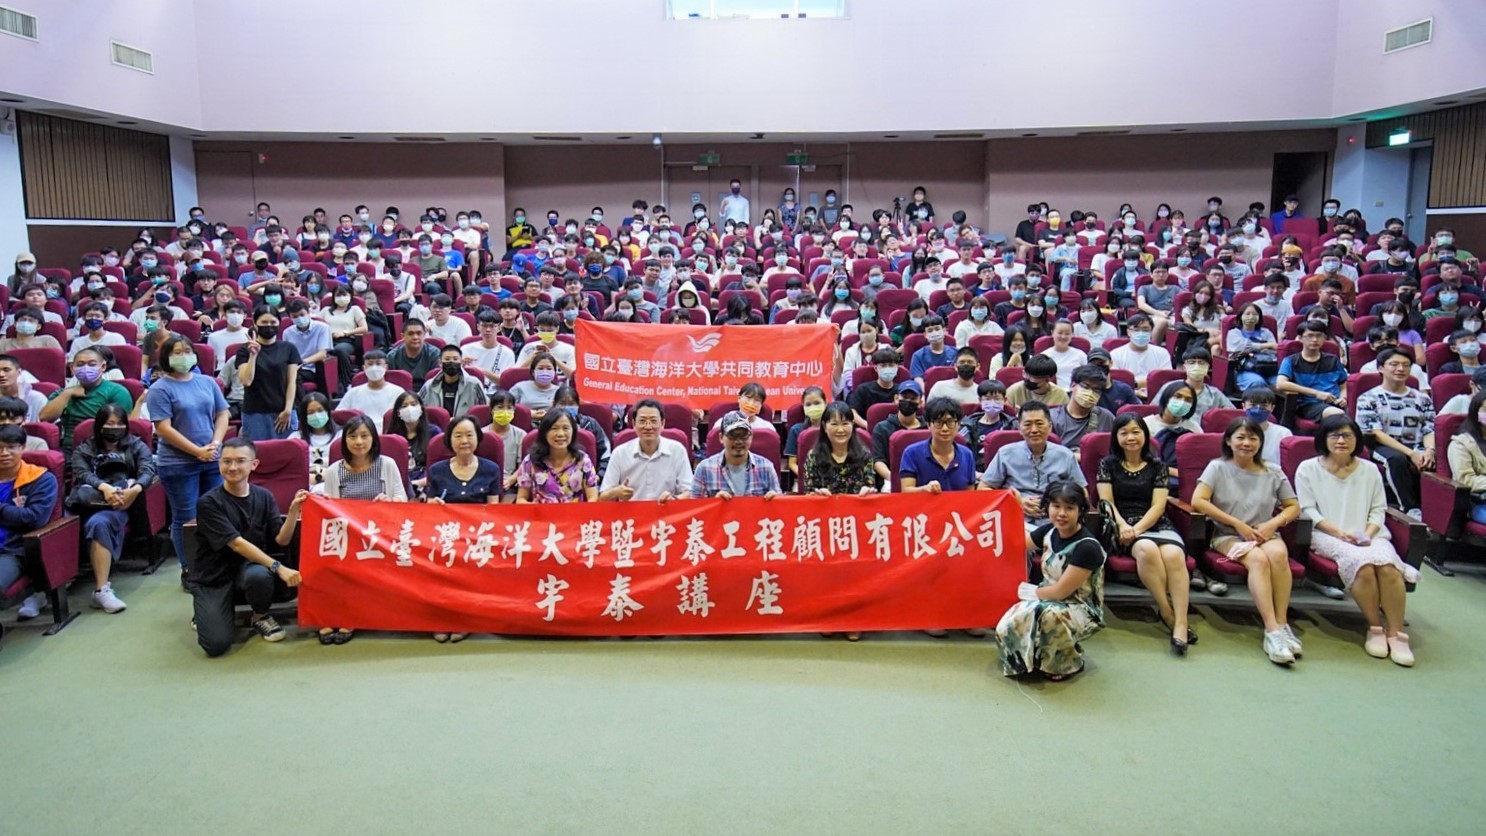 華語流行音樂作詞人方文山蒞海大專題演講3百位以上學生參加